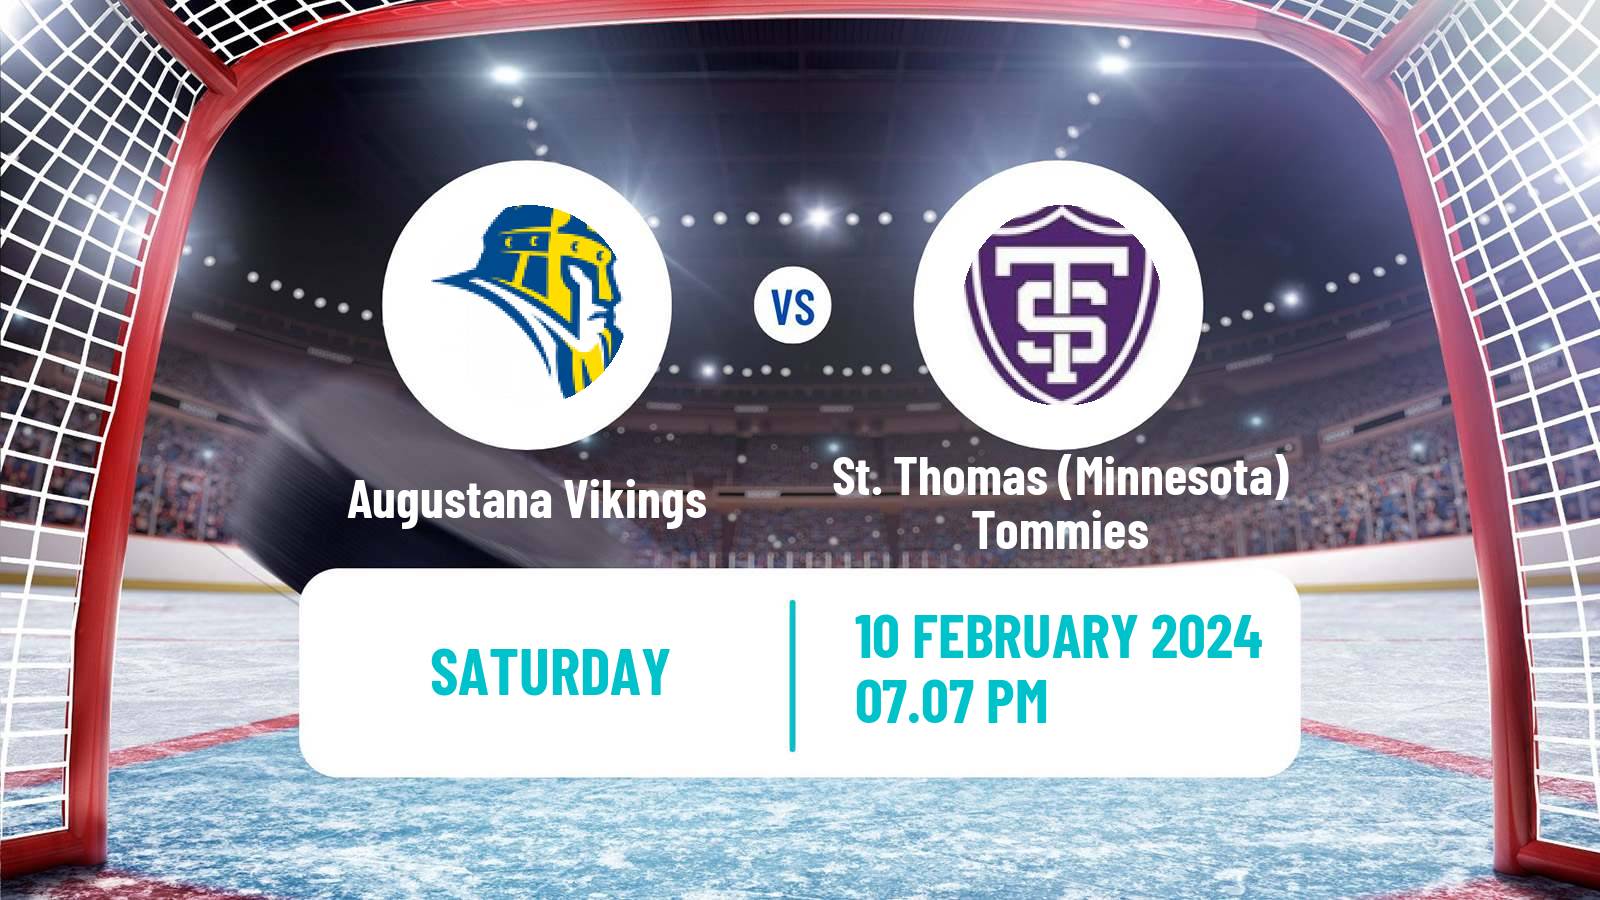 Hockey NCAA Hockey Augustana Vikings - St. Thomas (Minnesota) Tommies